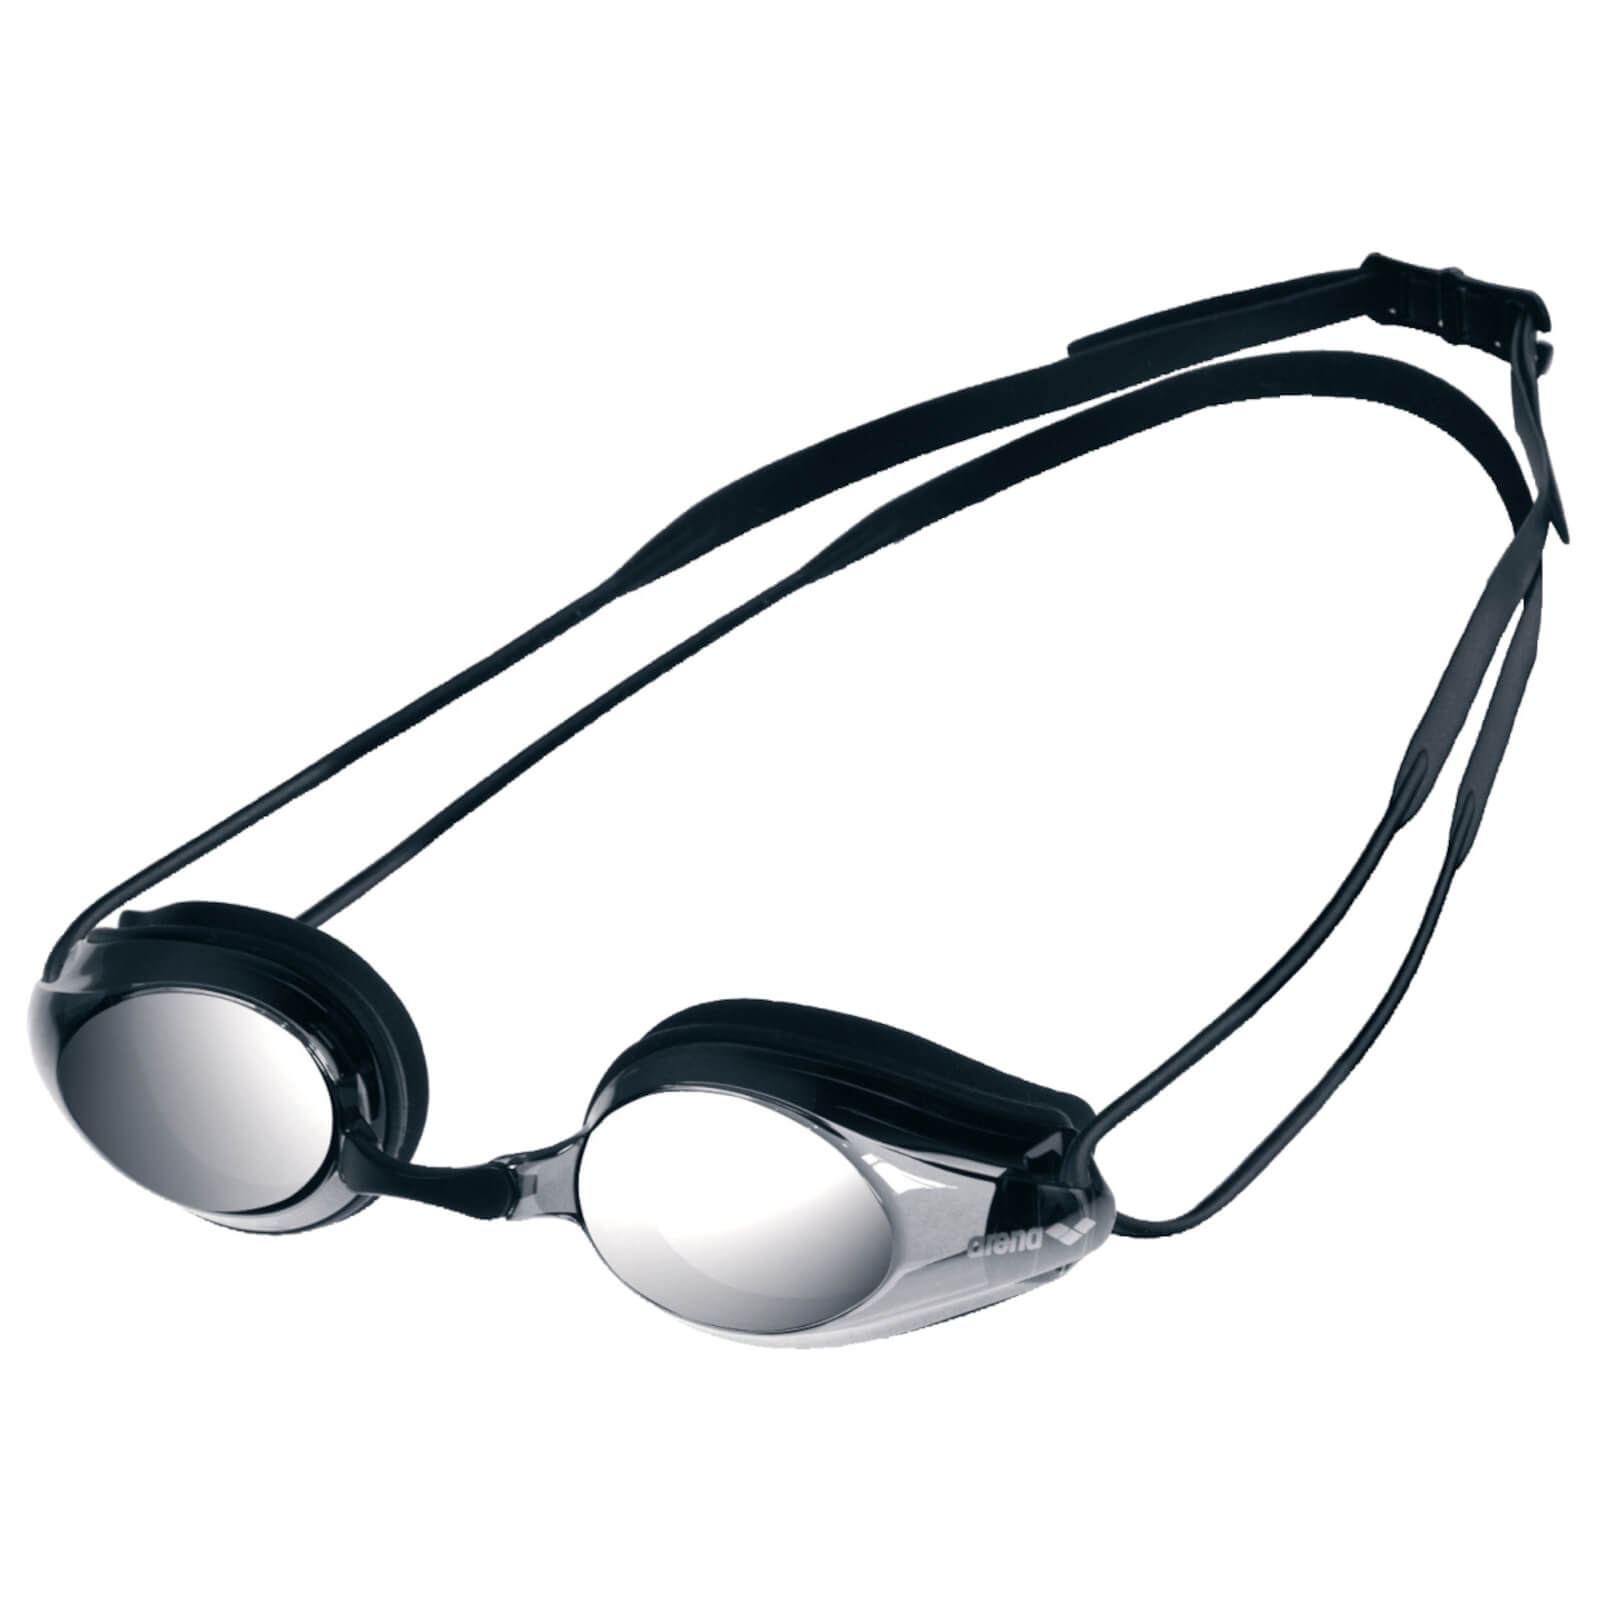 Men's Swimming Goggles Arena Tracks Mirrored | eBay